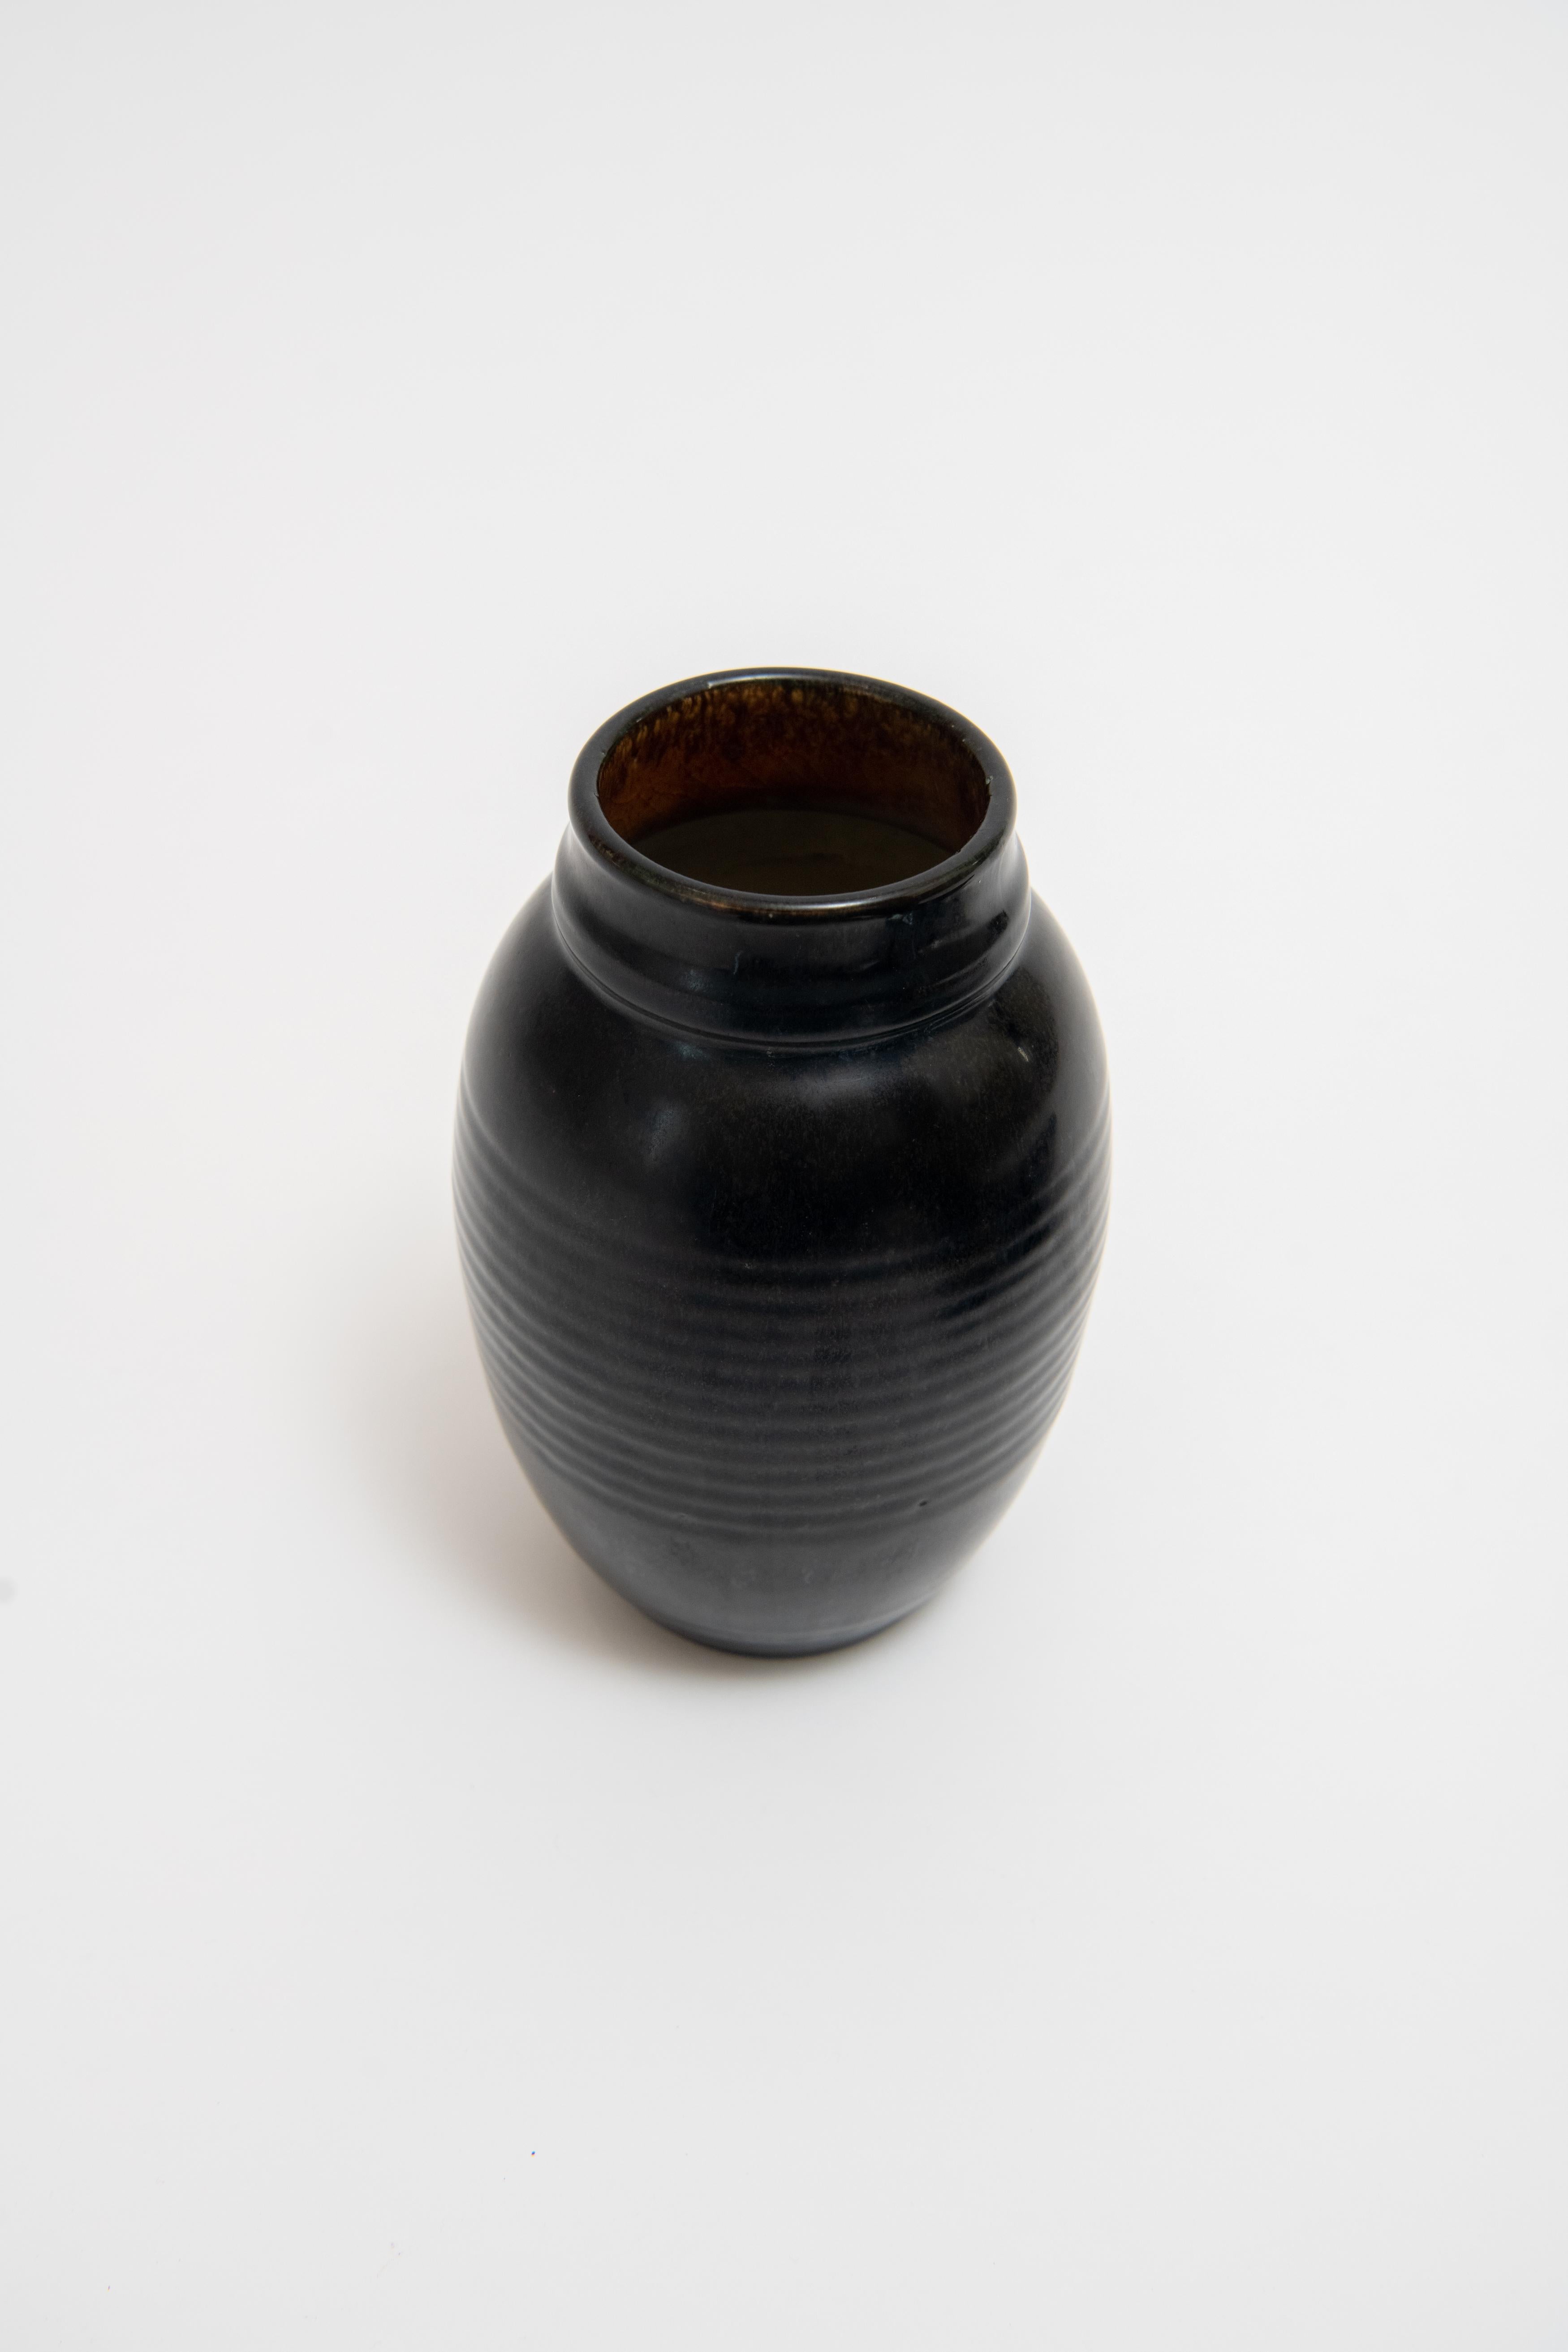 Art Deco Émile Decoeur, Black Glazed Stoneware Vase, c. 1930 For Sale